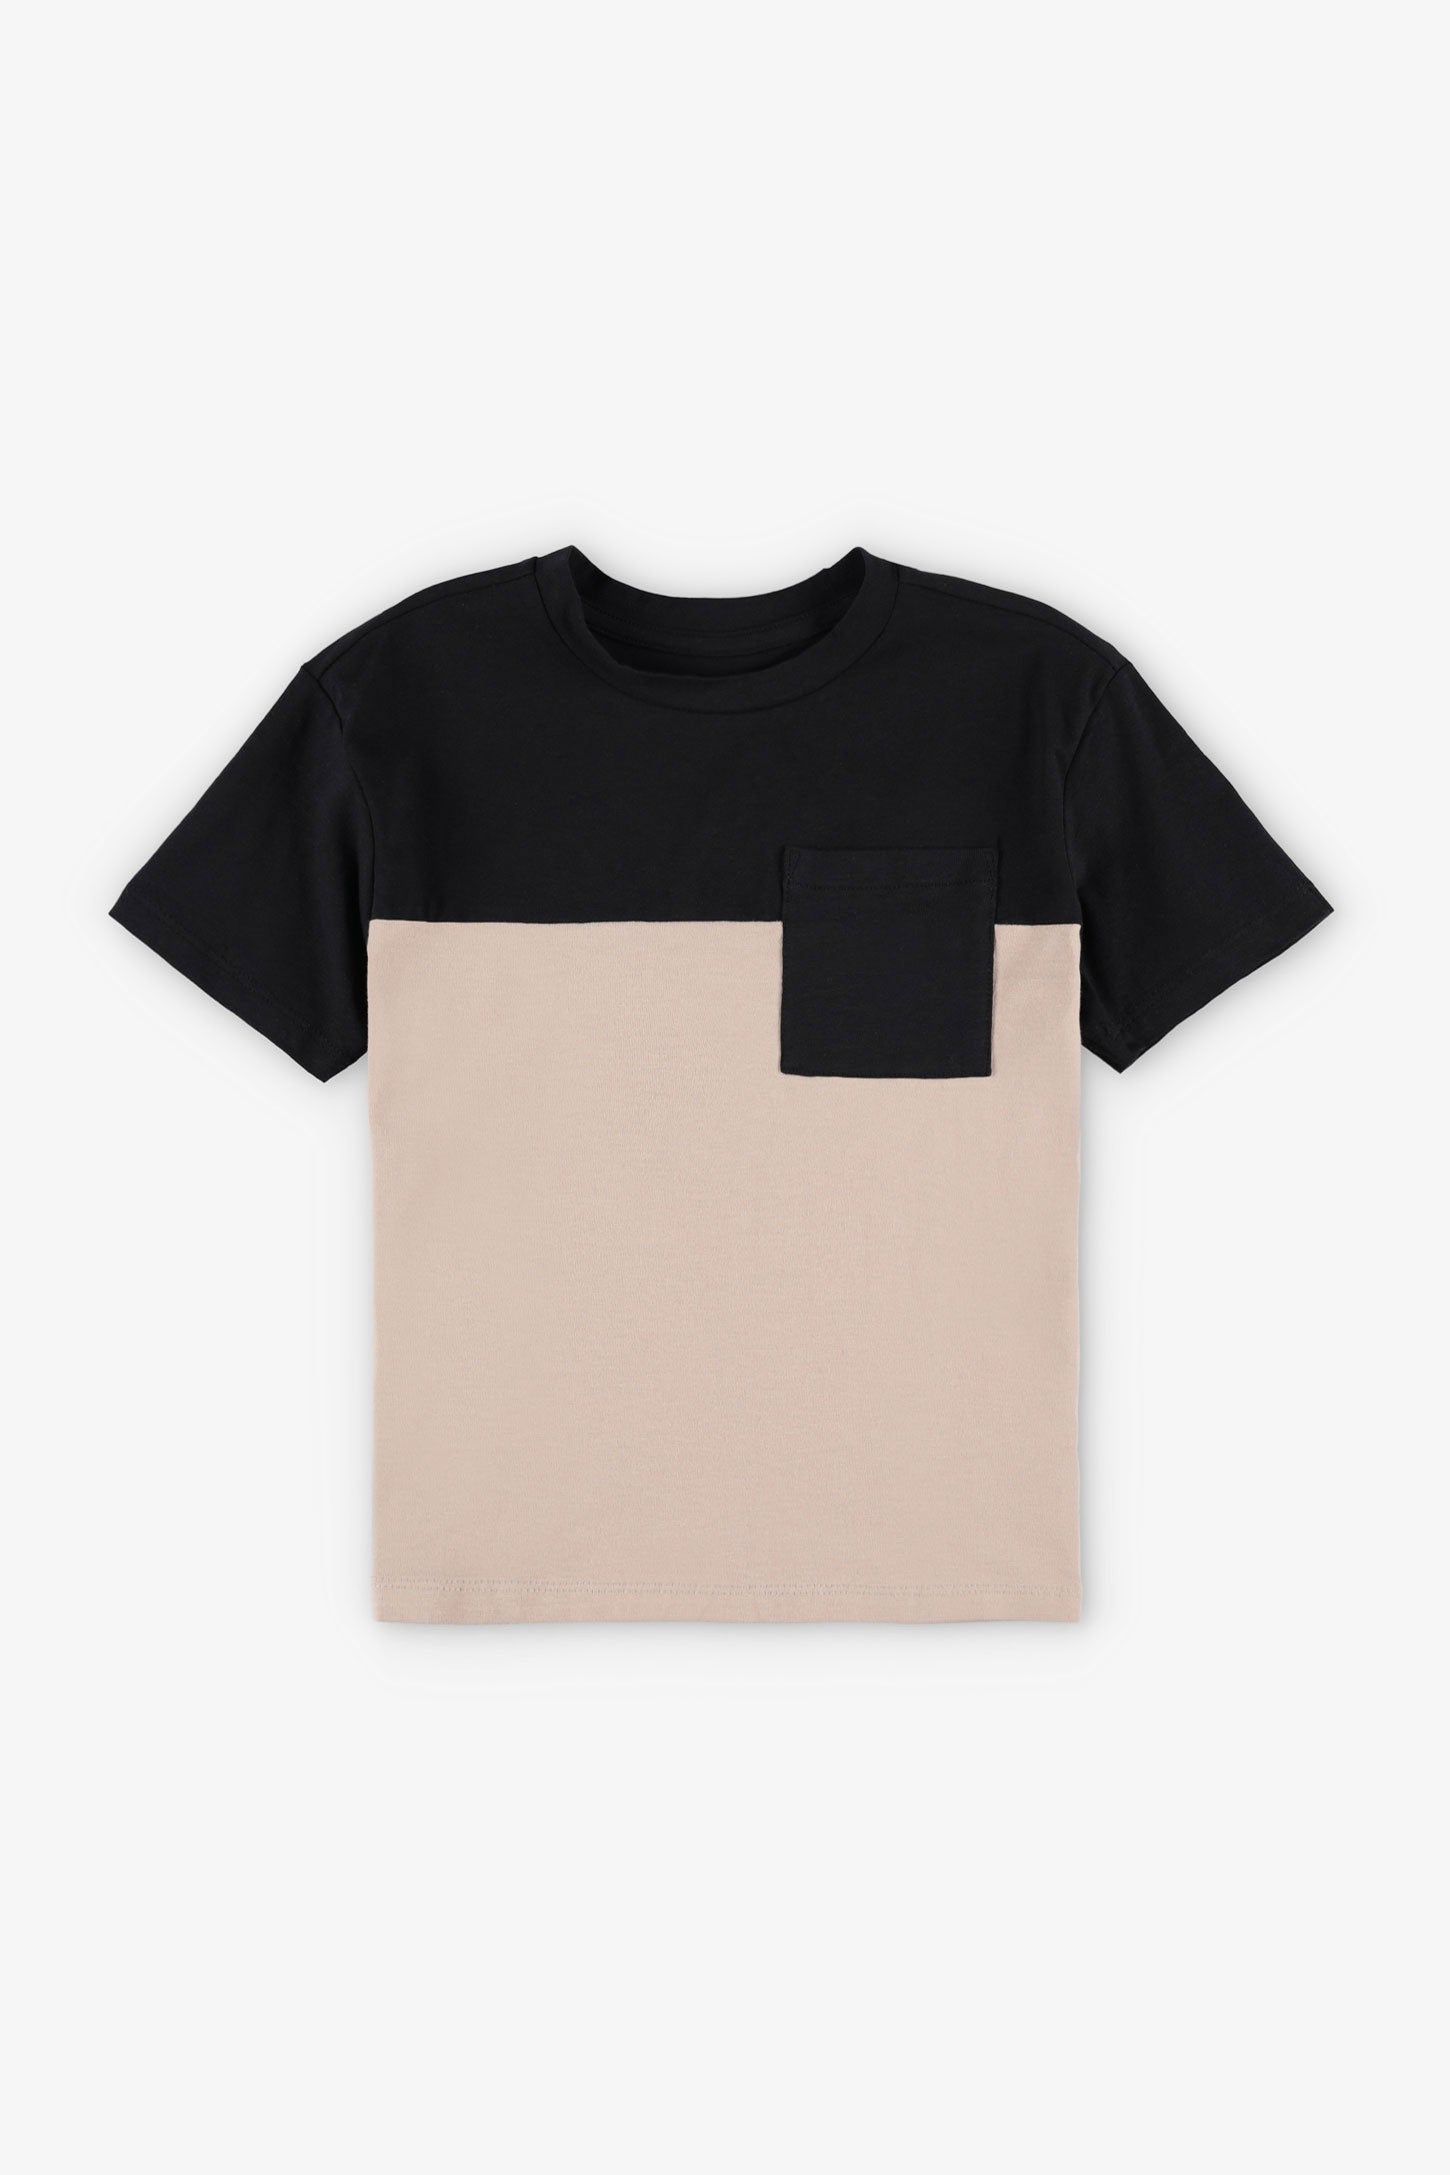 T-shirt à poche en coton, 2/20$ - Enfant garçon && TAUPE